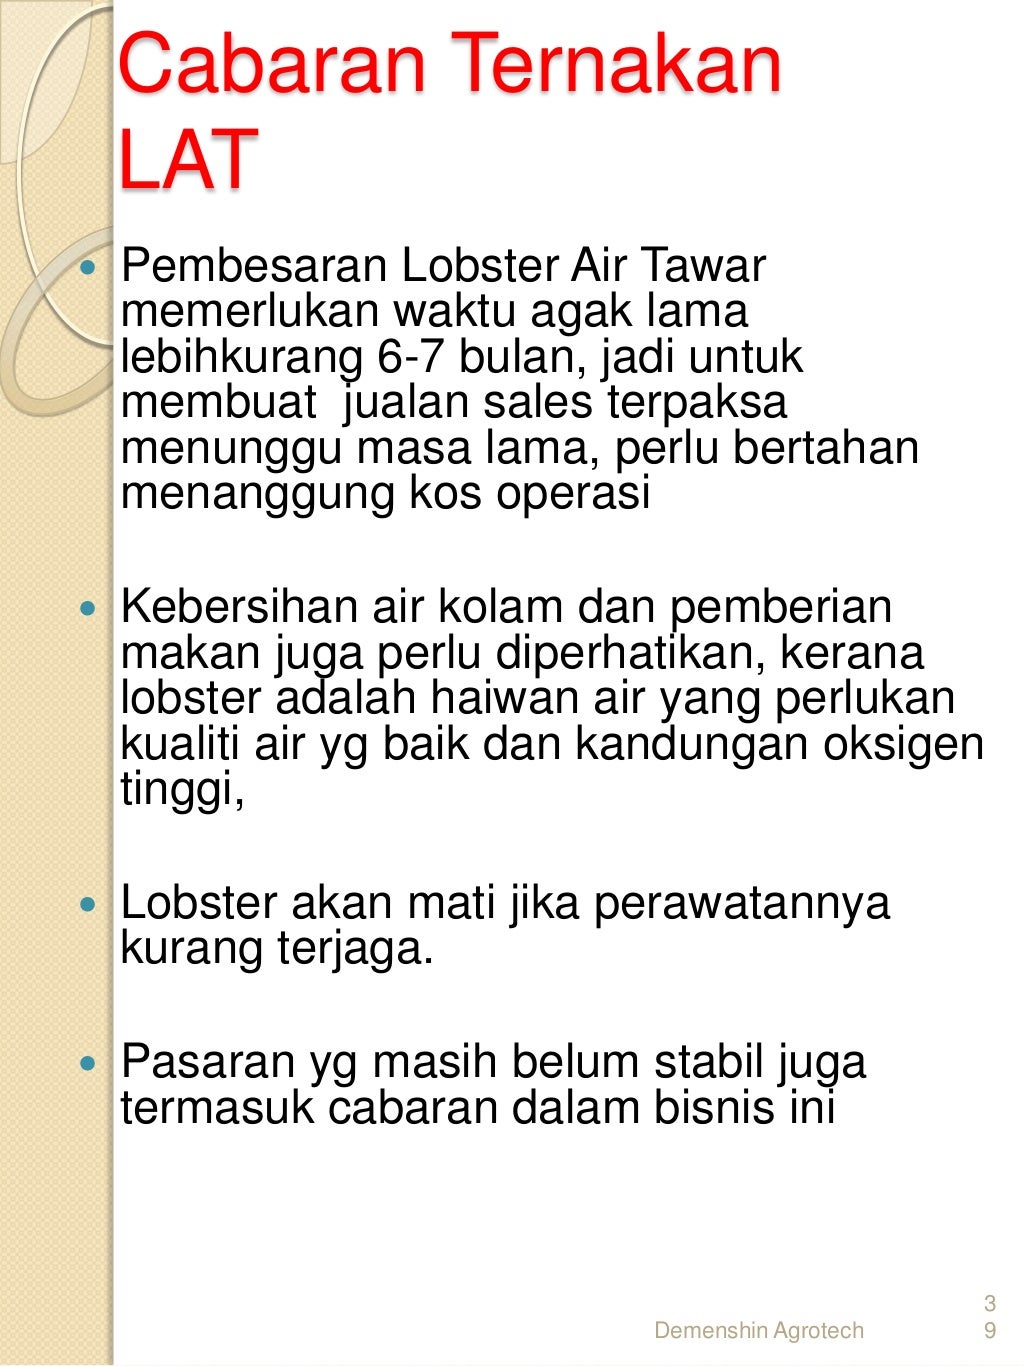 Cara ternak Udang kara lobster air tawar LAT di 017-2839861.